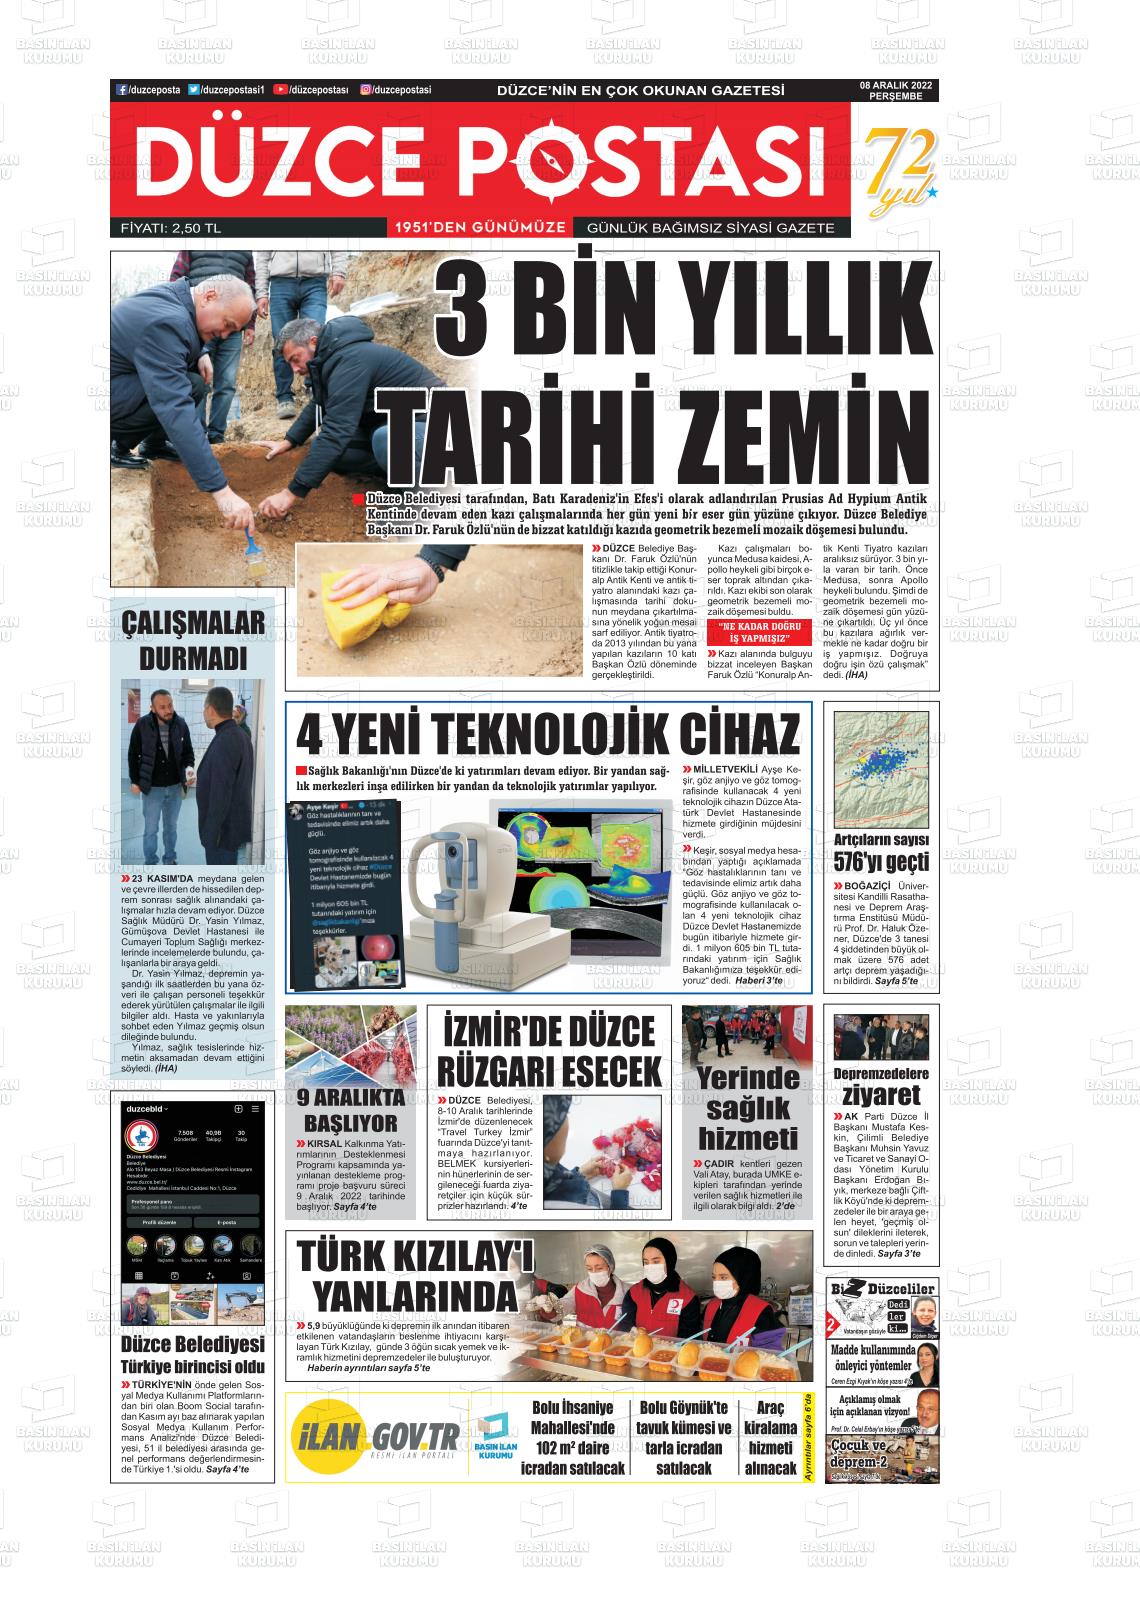 08 Aralık 2022 Düzce Postası Gazete Manşeti